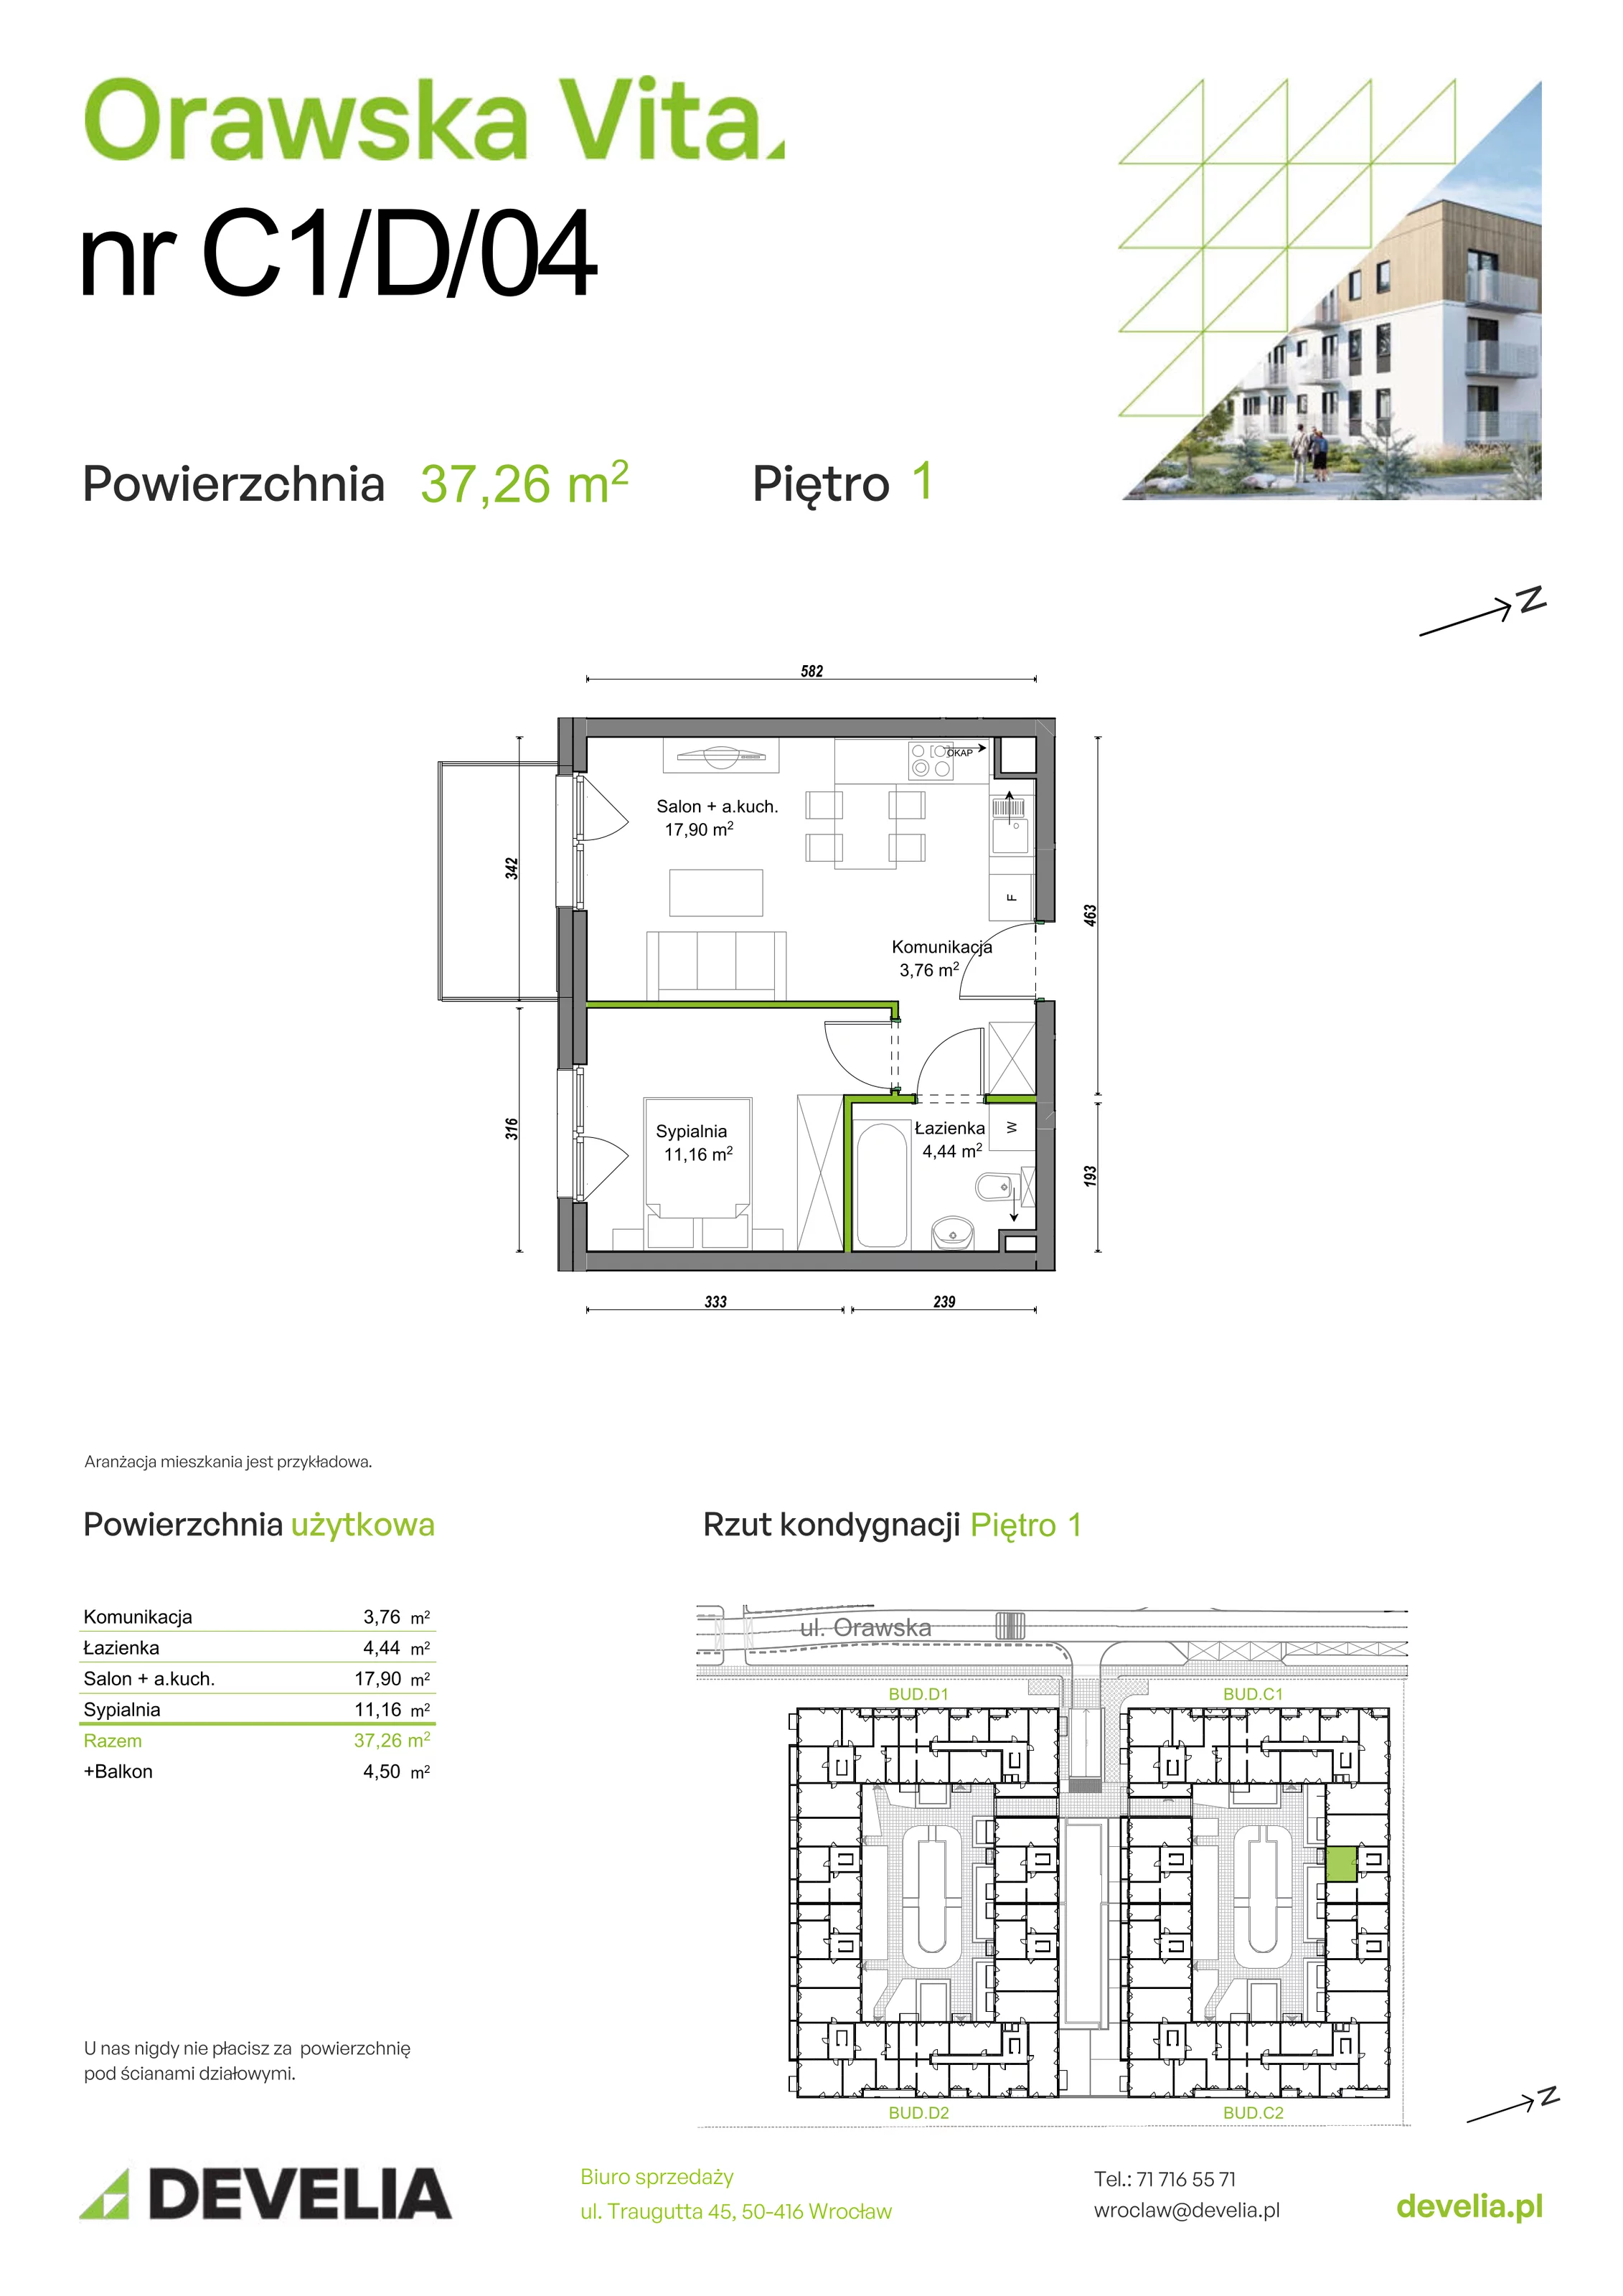 Mieszkanie 37,26 m², piętro 1, oferta nr C1/D/04, Orawska Vita, Wrocław, Ołtaszyn, Krzyki, ul. Orawska 73